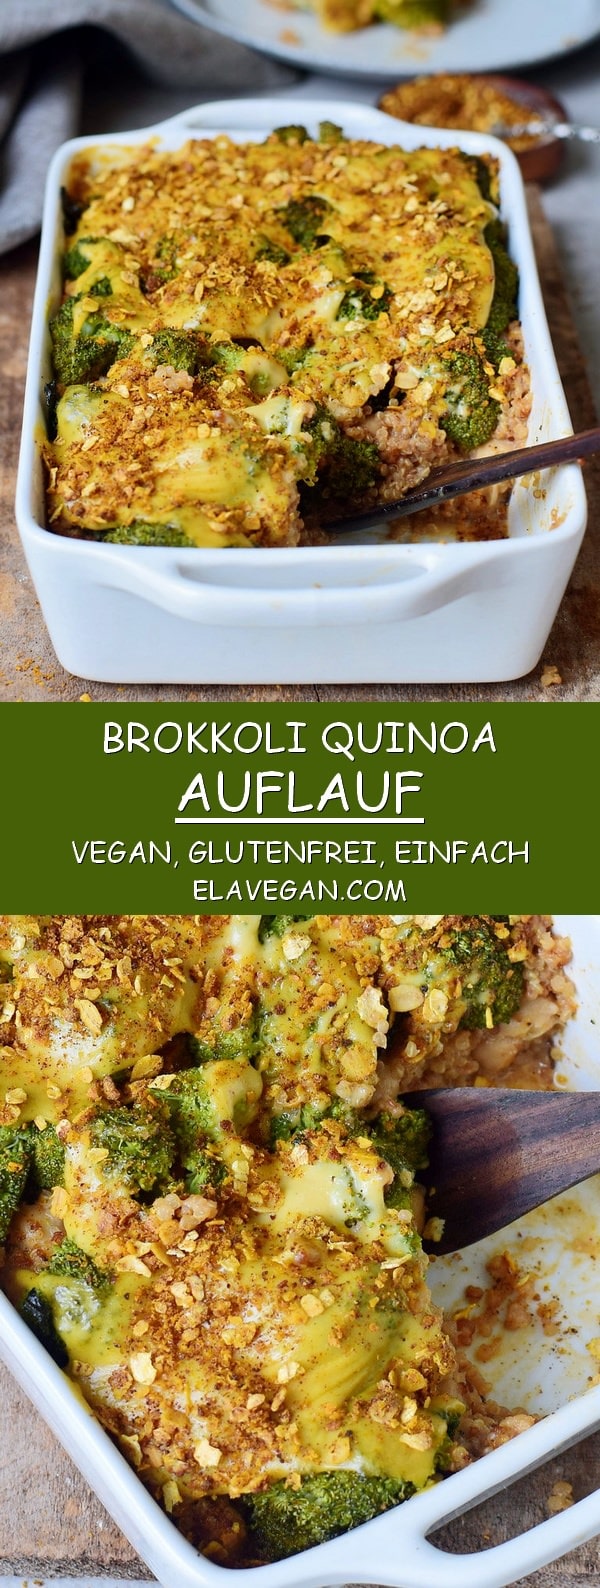 gesunder glutenfreier Brokkoli Auflauf (Gratin) mit Quinoa und veganem Käse